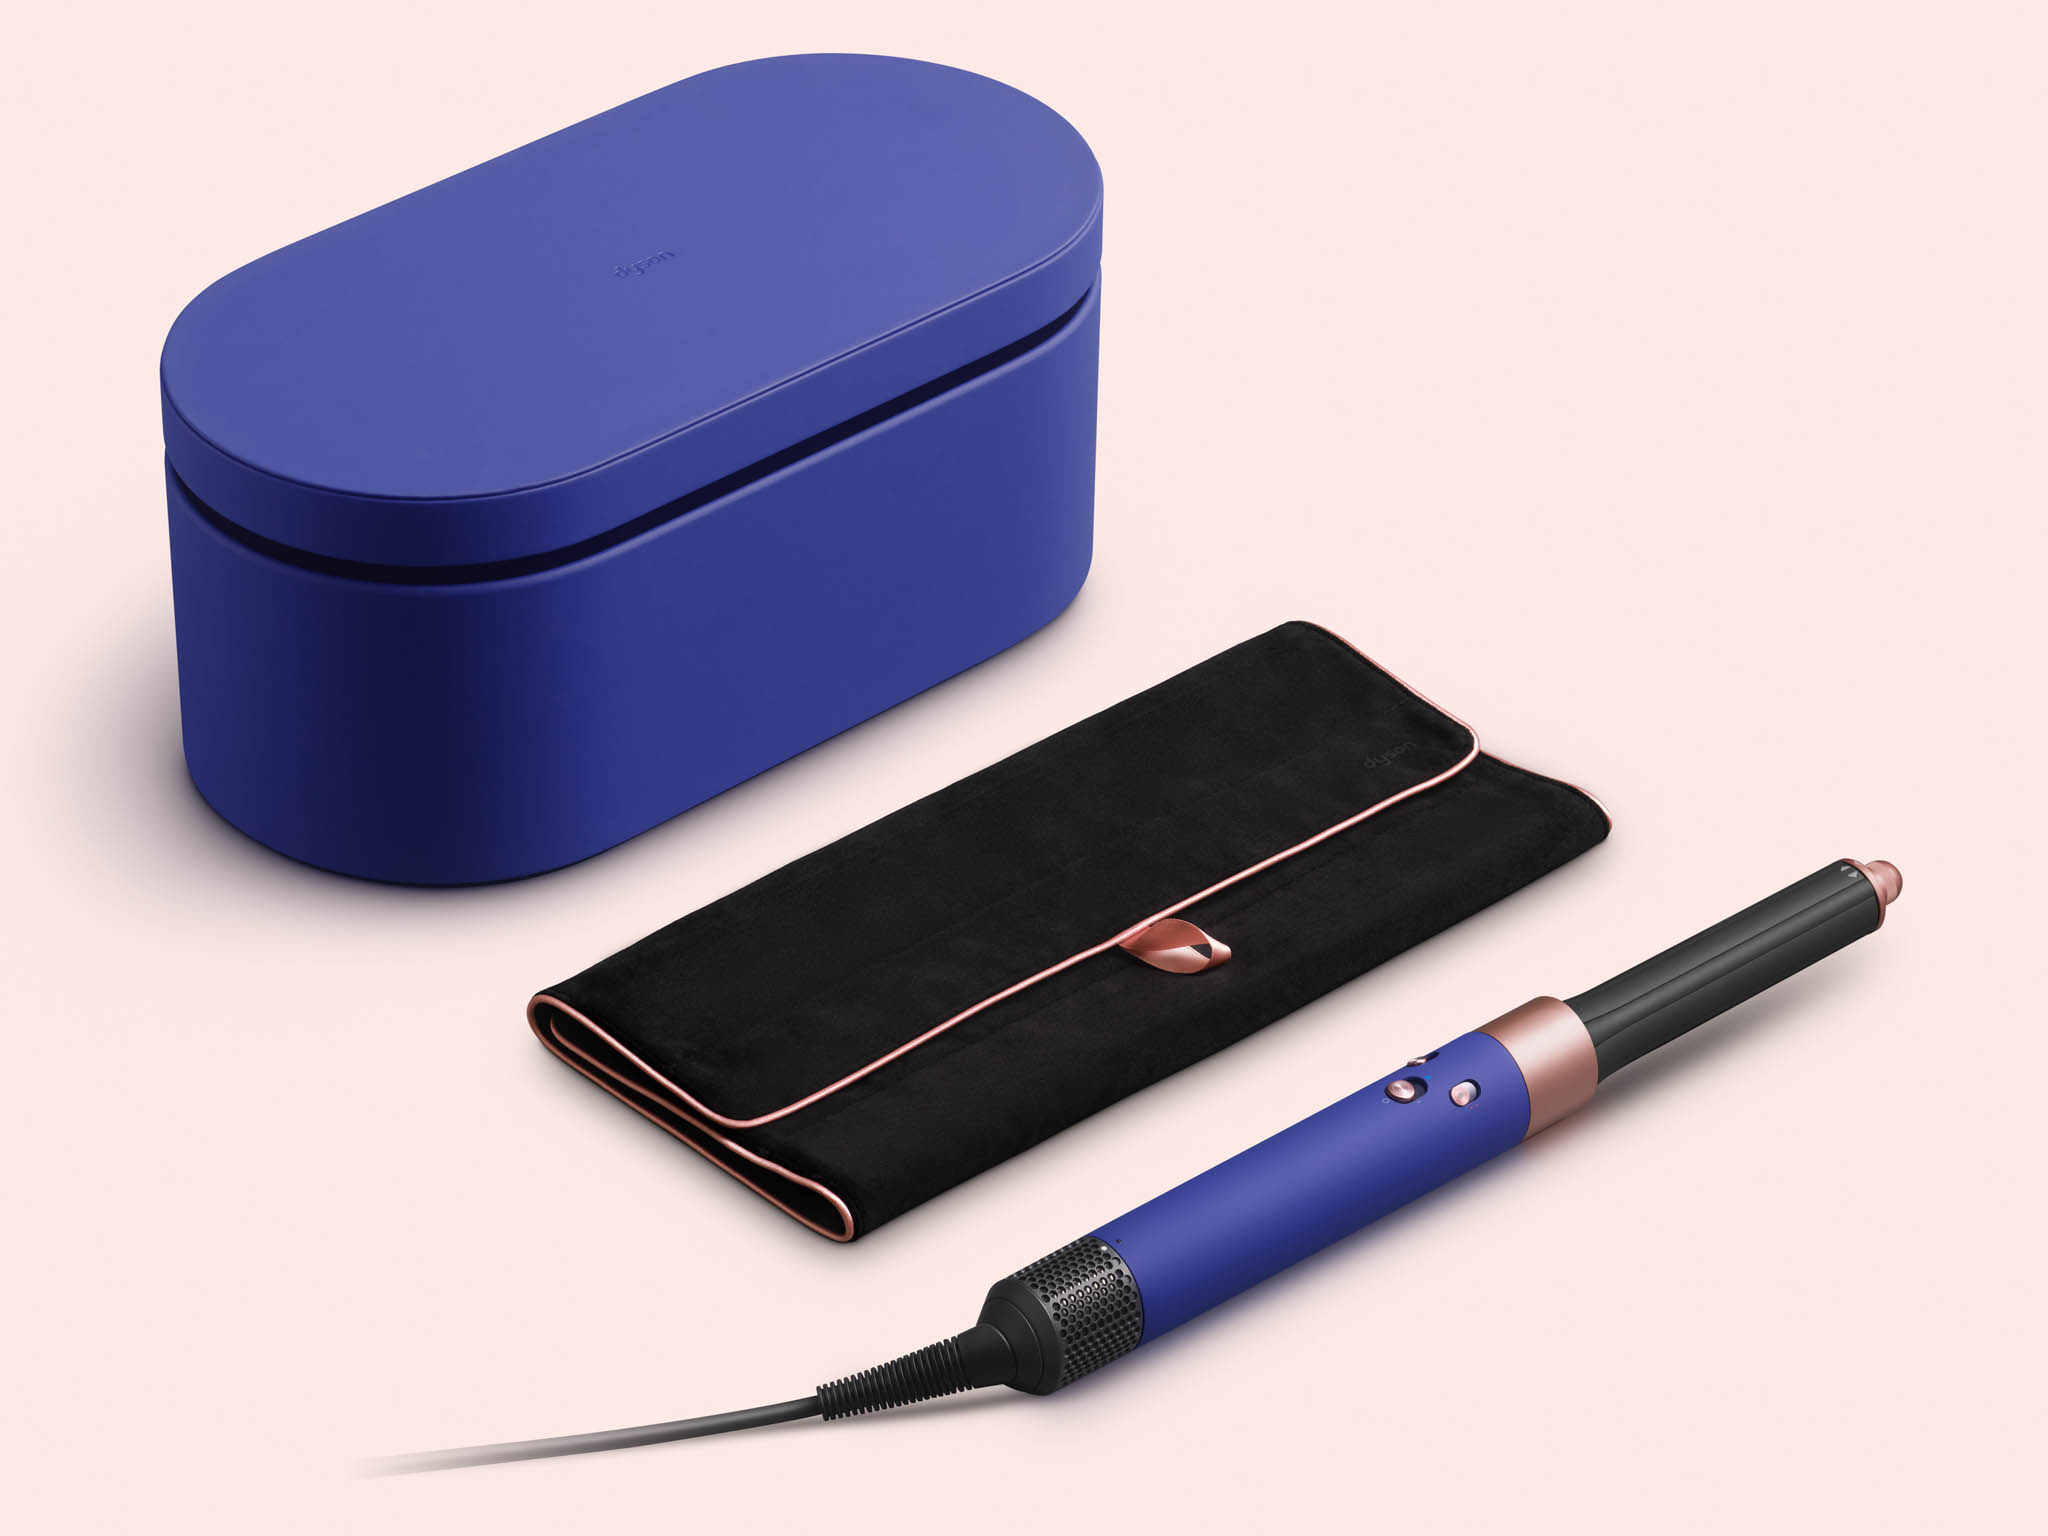 Dyson giới thiệu máy tạo kiểu tóc Airwrap phiên bản giới hạn với màu sắc mới Vinca Blue & Rosé